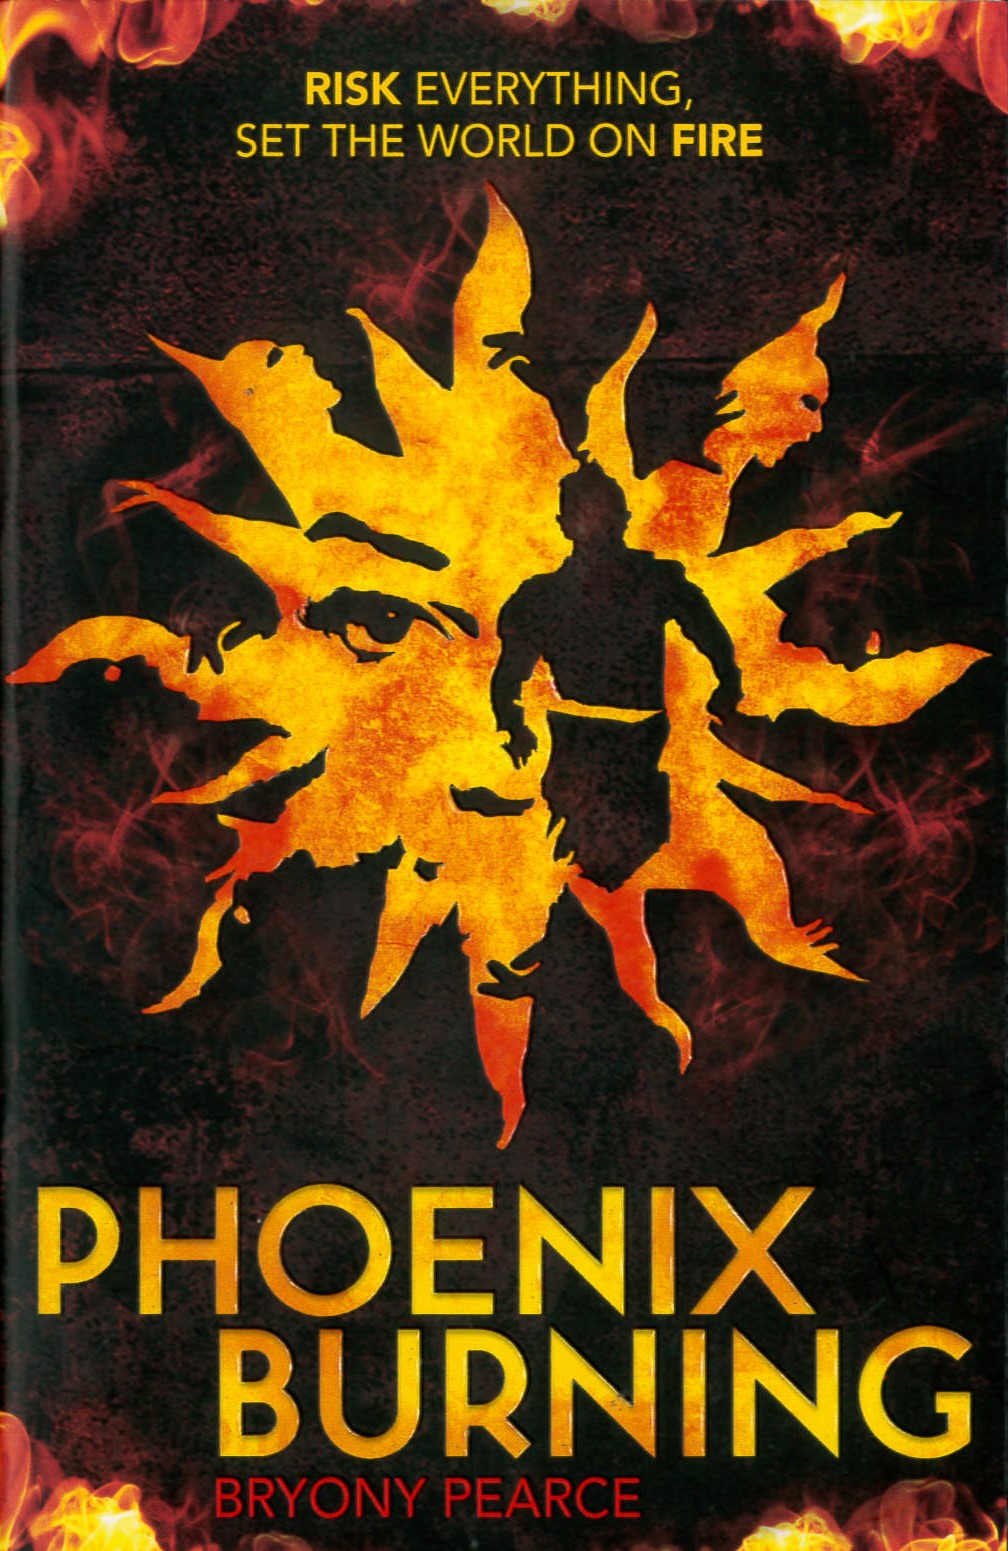 Phoenix burning /